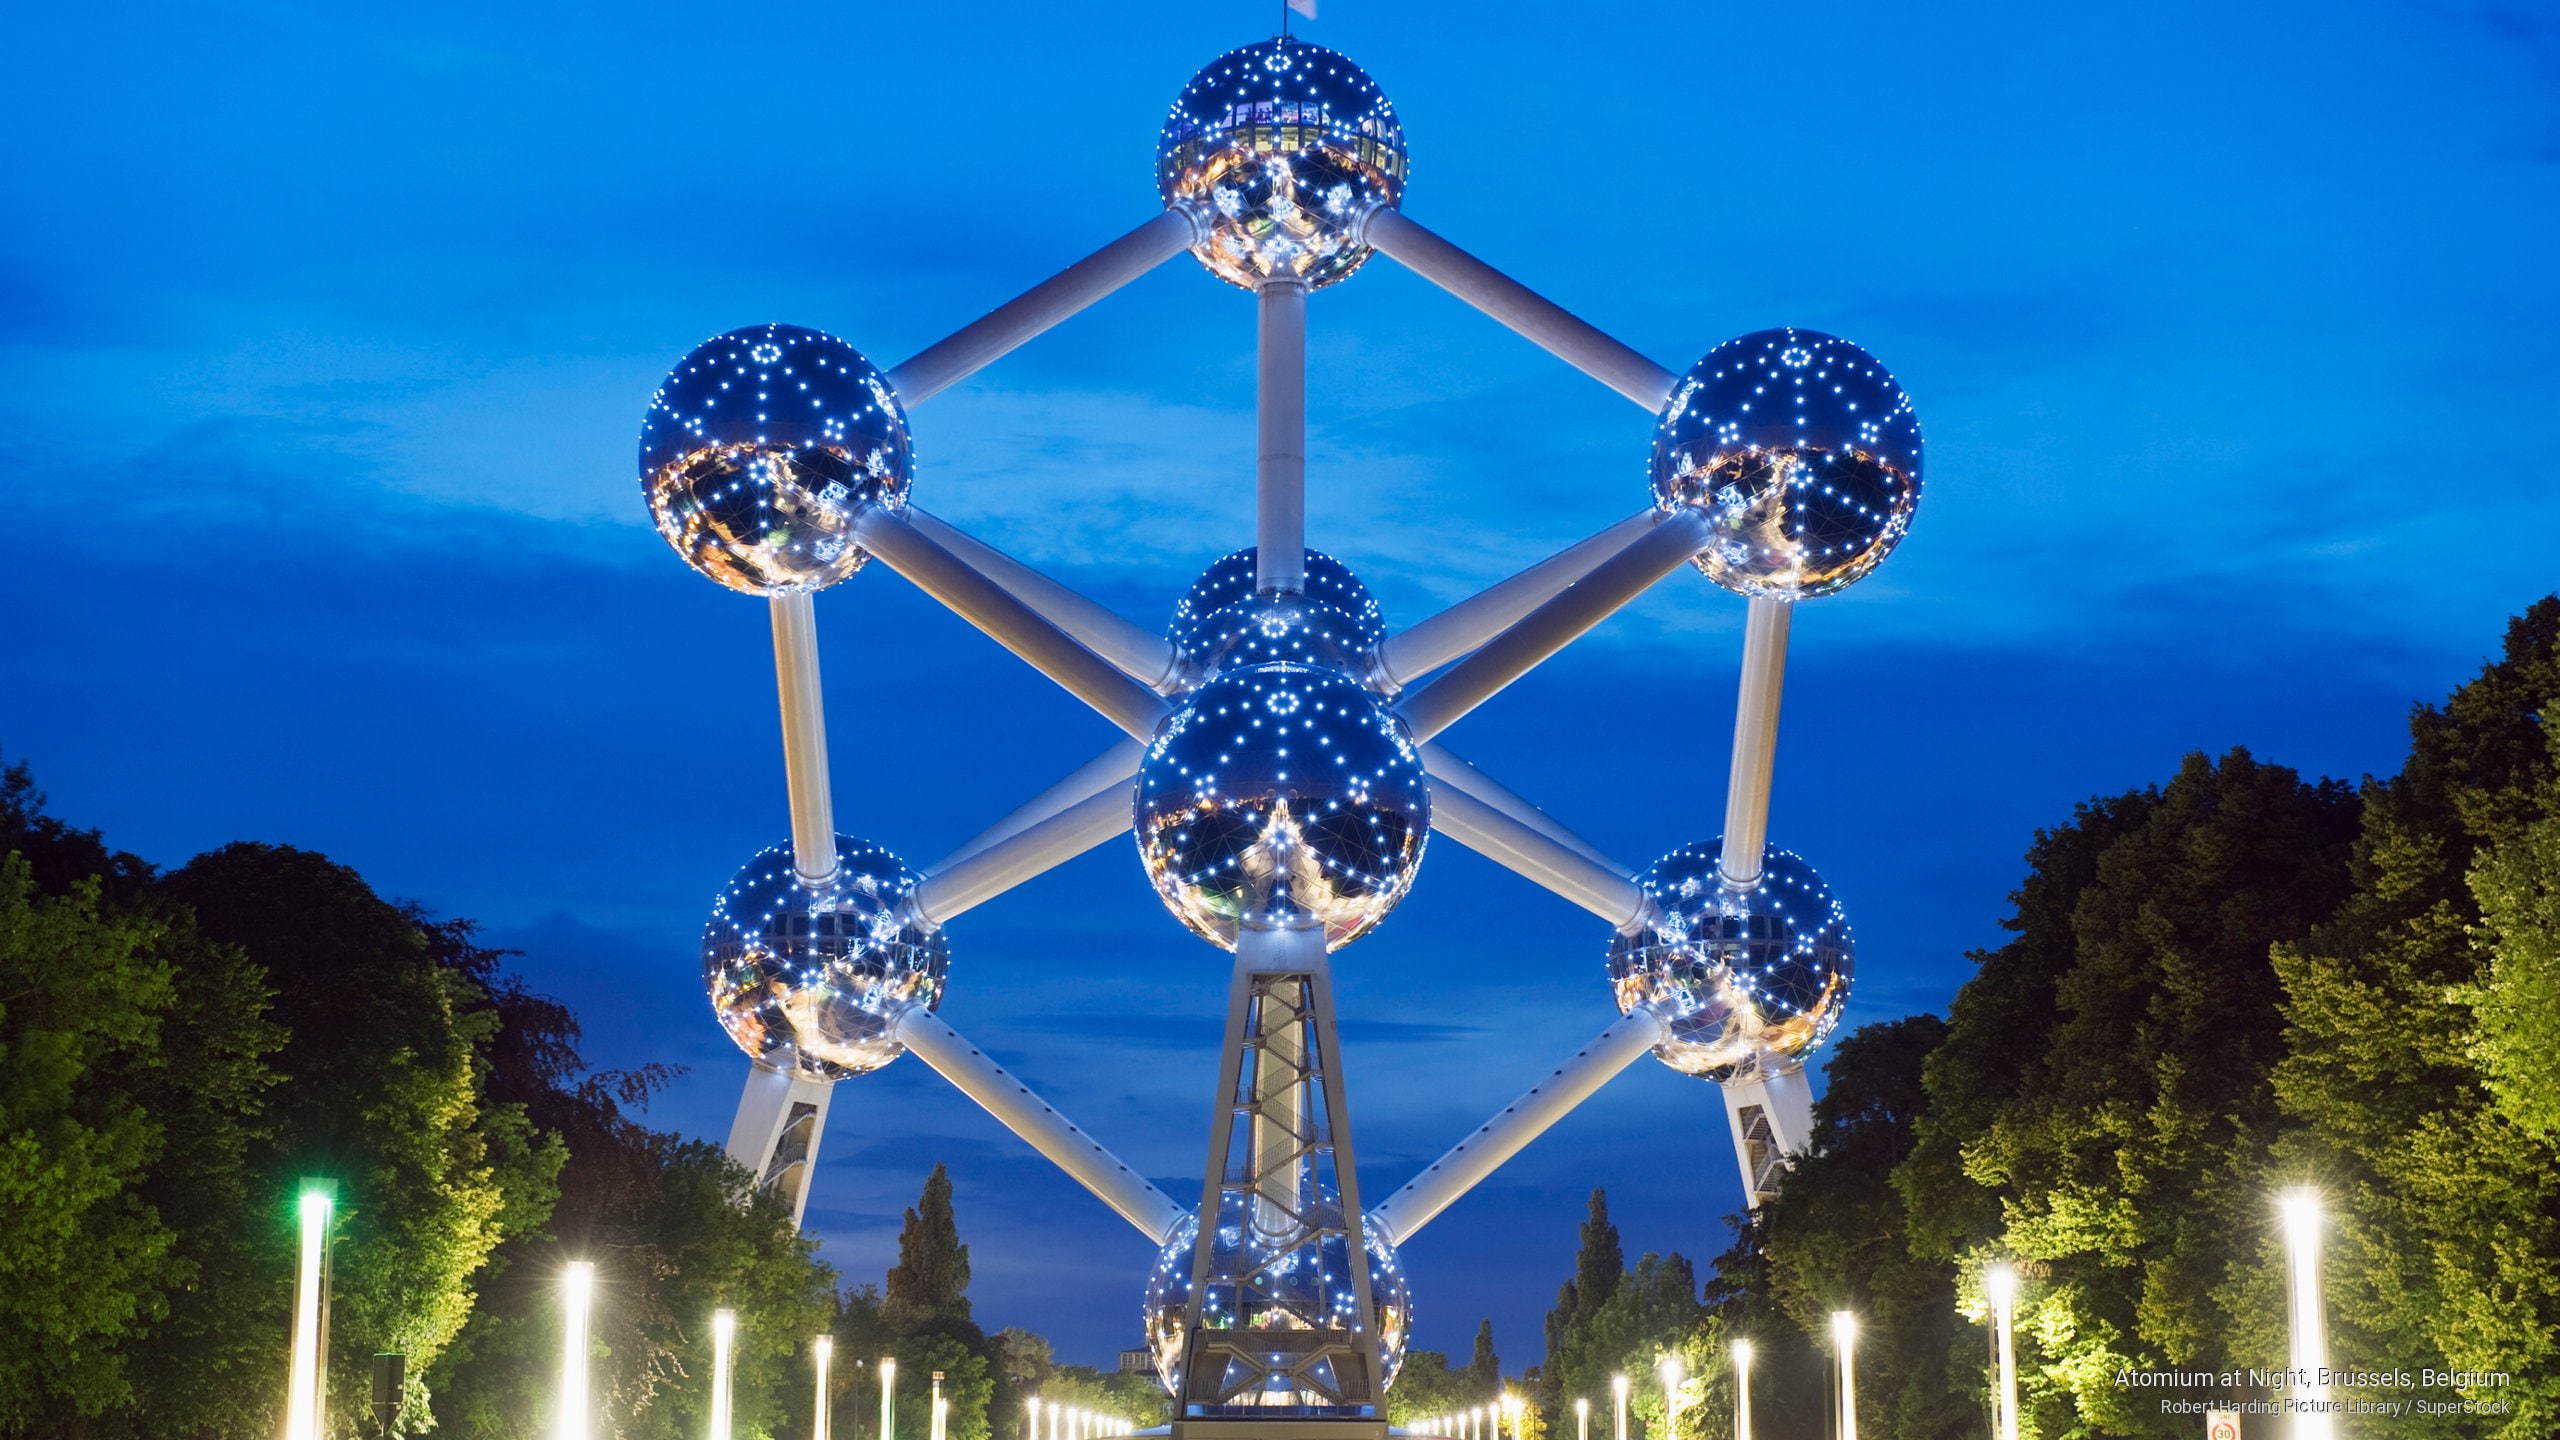 Atomium at Night, Brussels, Belgium, Landmarks